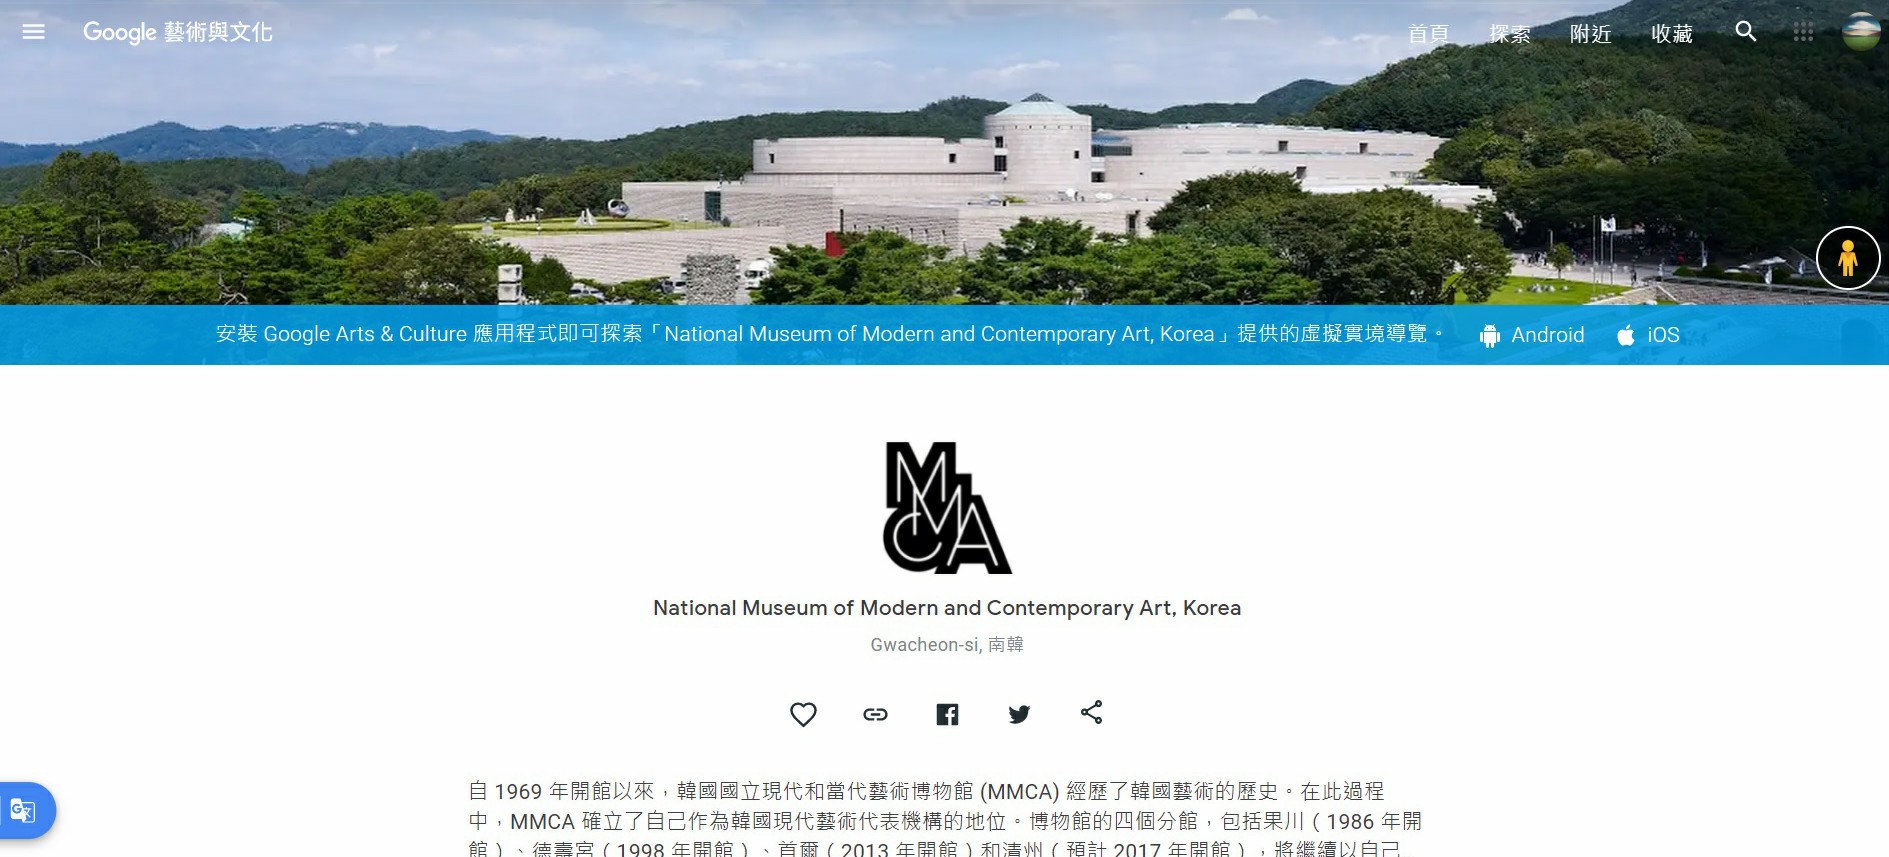 MMCA,韓國國立現代藝術博物館,首爾國立現代美術館,韓國首爾MMCA,Google Arts & Culture,Google 藝術與文化,虛擬實境美術館,線上展覽,線上美術館,首爾美術館,首爾博物館